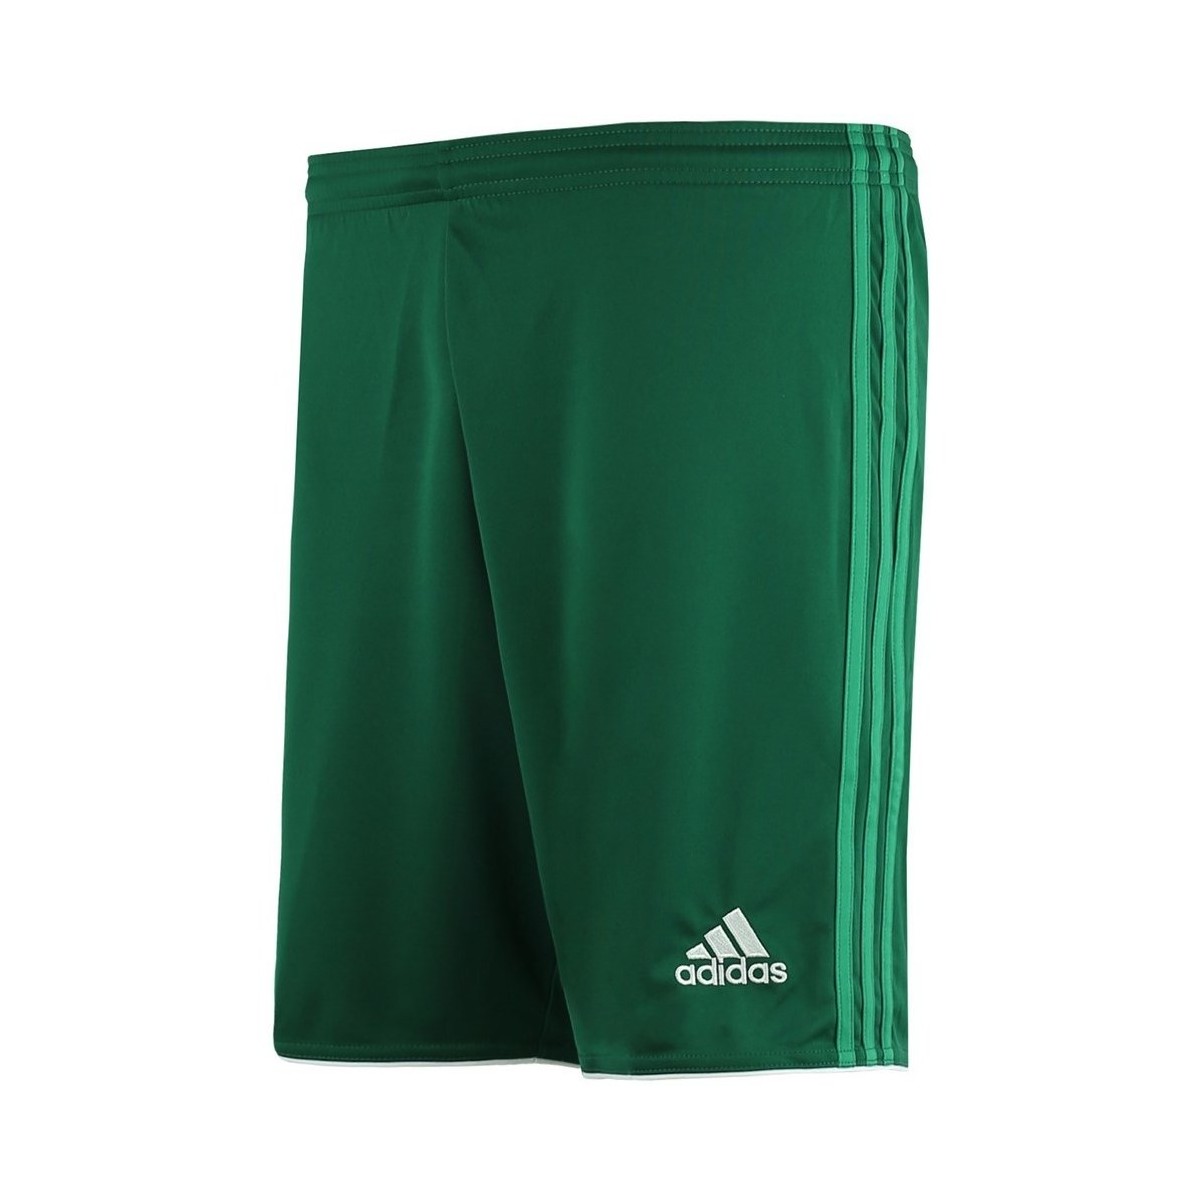 Textil Muži Tříčtvrteční kalhoty adidas Originals Fort 14 Zelená